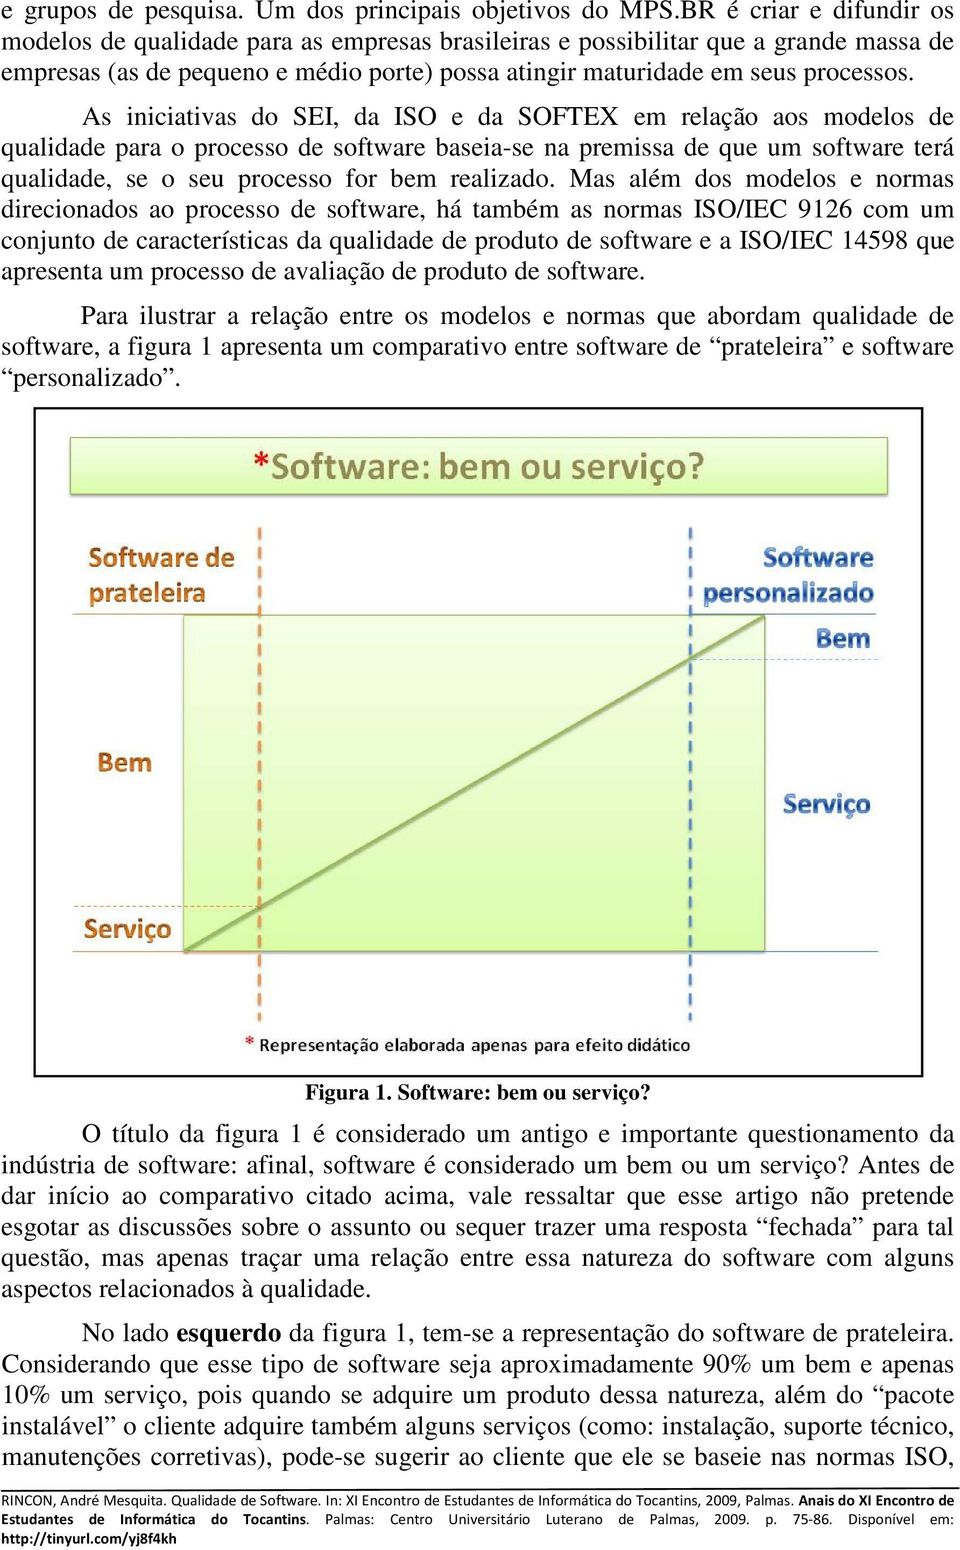 As iniciativas do SEI, da ISO e da SOFTEX em relação aos modelos de qualidade para o processo de software baseia-se na premissa de que um software terá qualidade, se o seu processo for bem realizado.